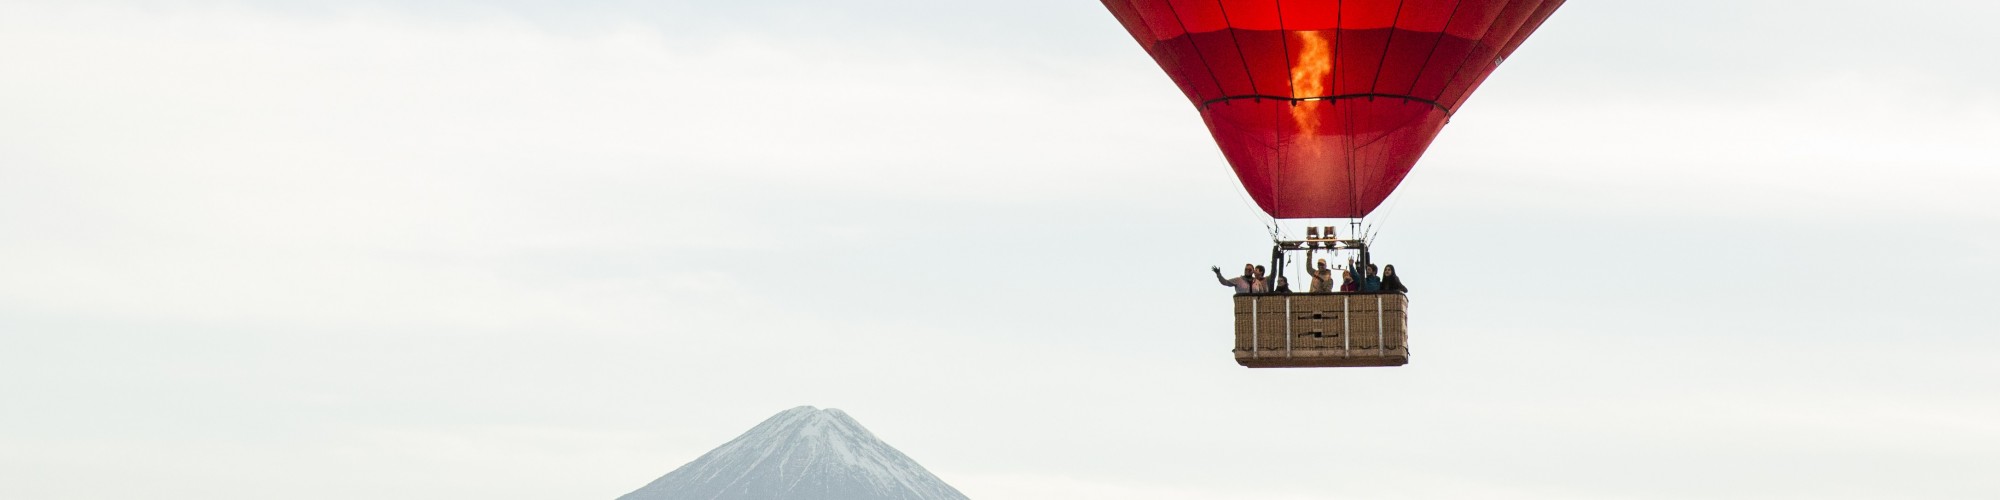 Atacama balloon